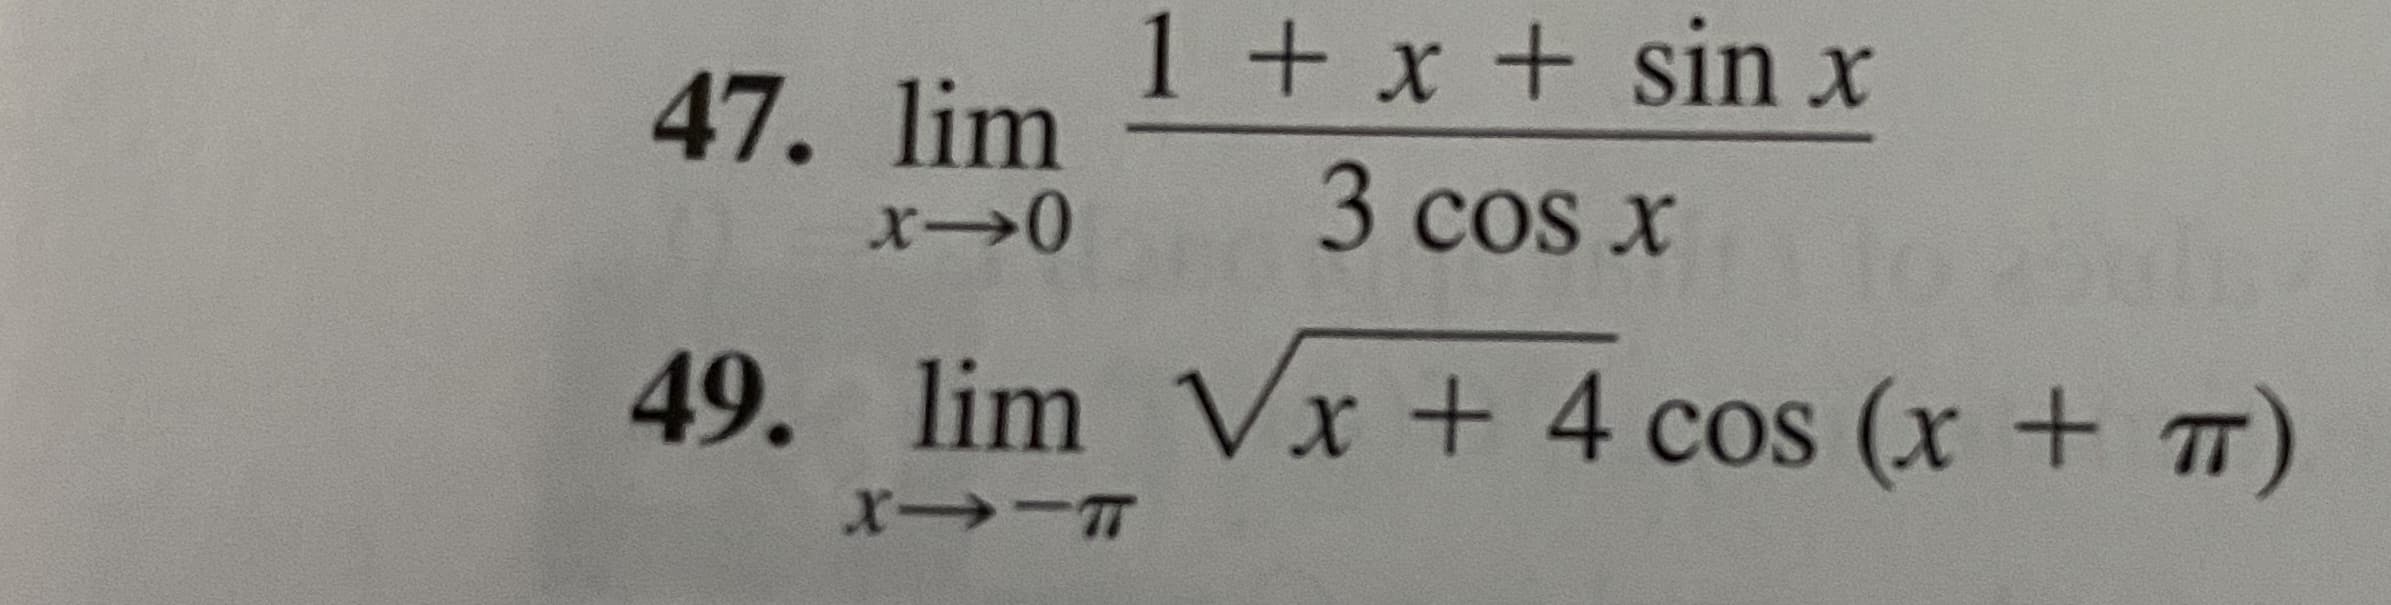 1 + x + sin x
47. lim
3 cos x
49. lim Vx + 4 cos (x + T)
